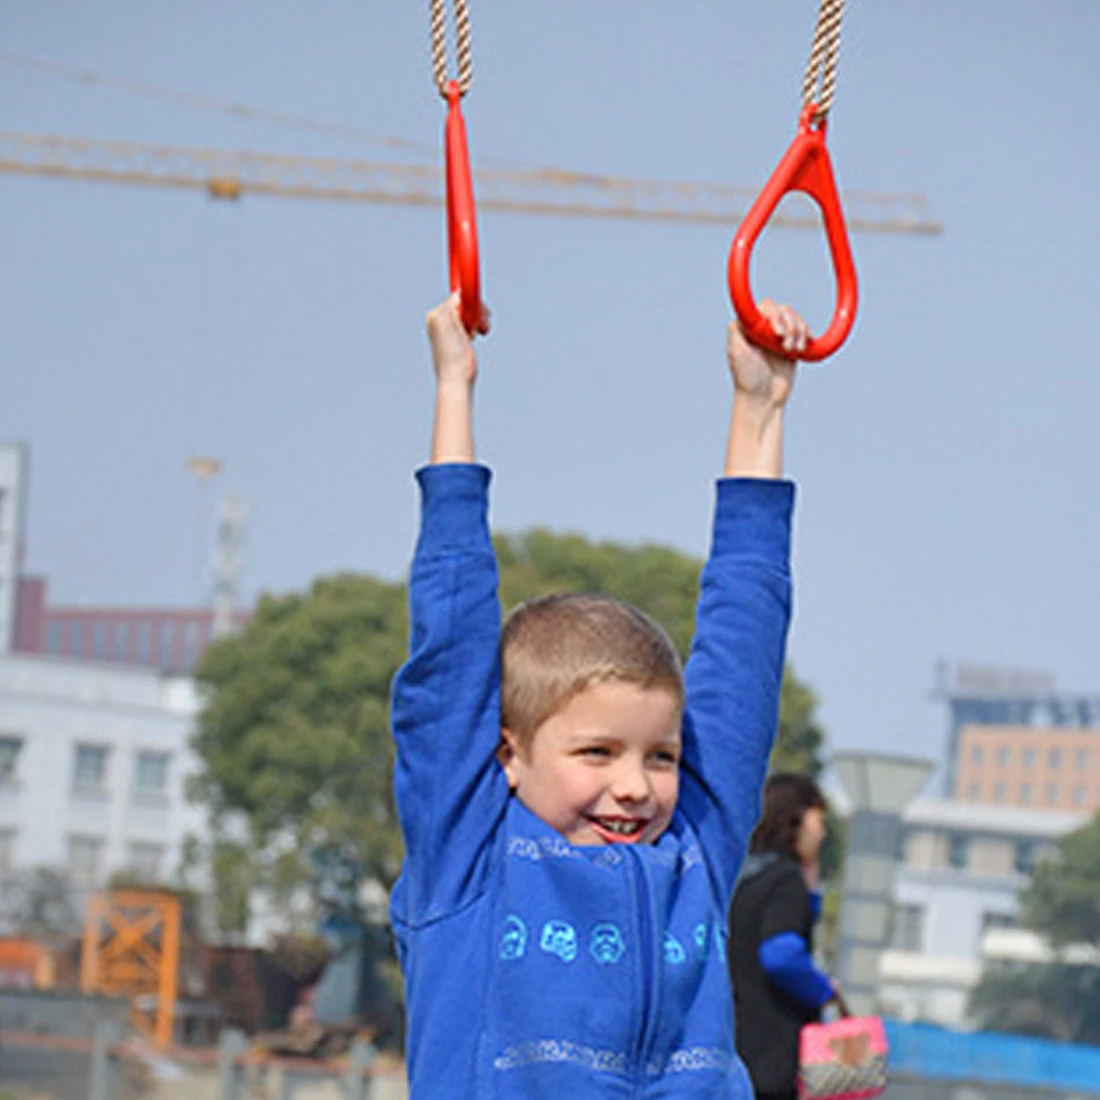 Пластиковый детский фитнес-домашний подтягивающий качающийся кольцевой инструмент для занятий спортом на открытом воздухе для детей старше 3 лет